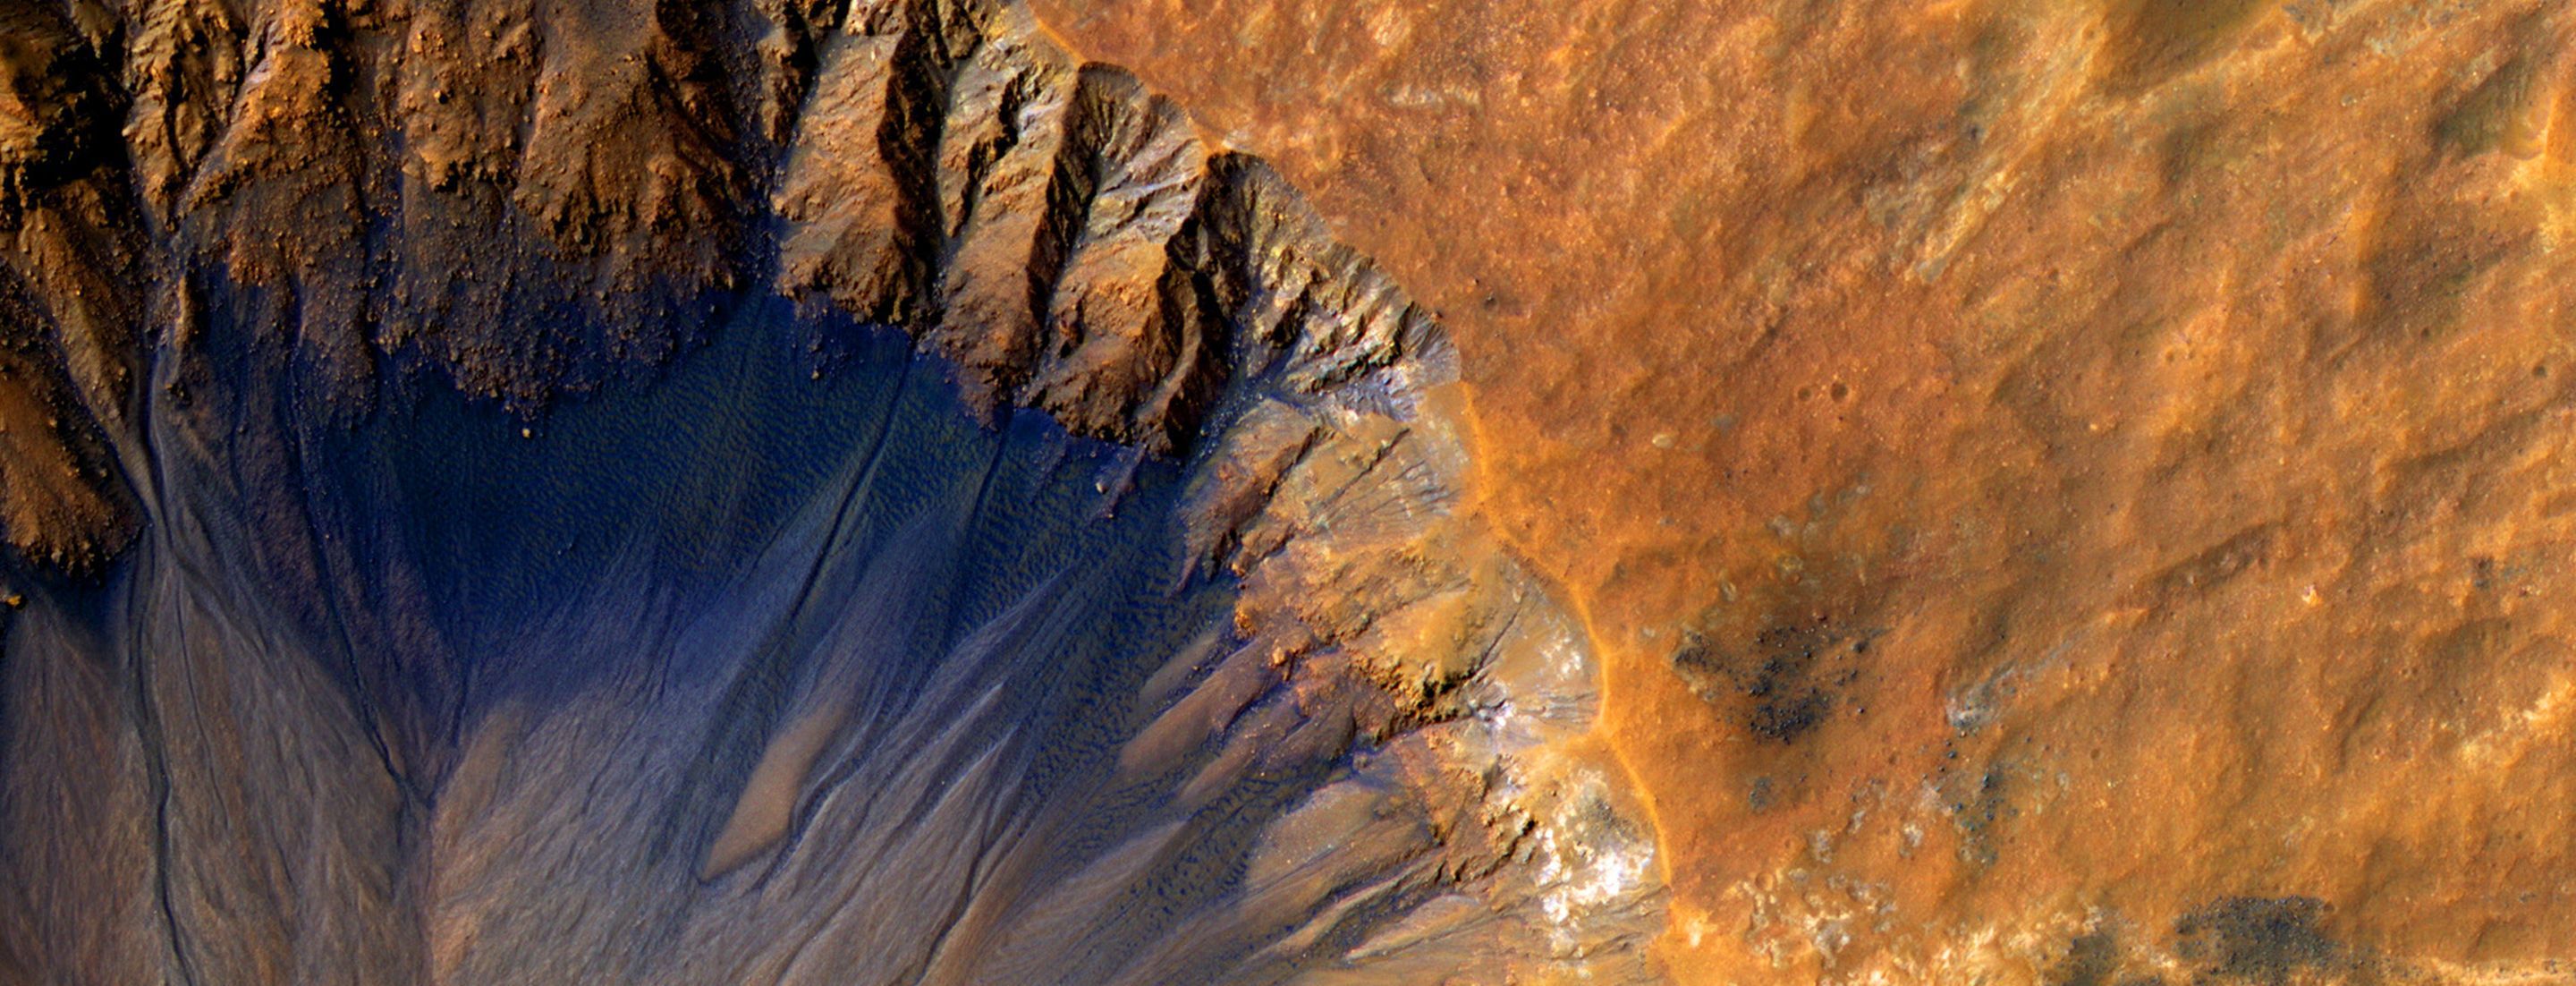 Орбитальный аппарат делает крупномасштабные фотографии марсианской поверхности. / © NASA